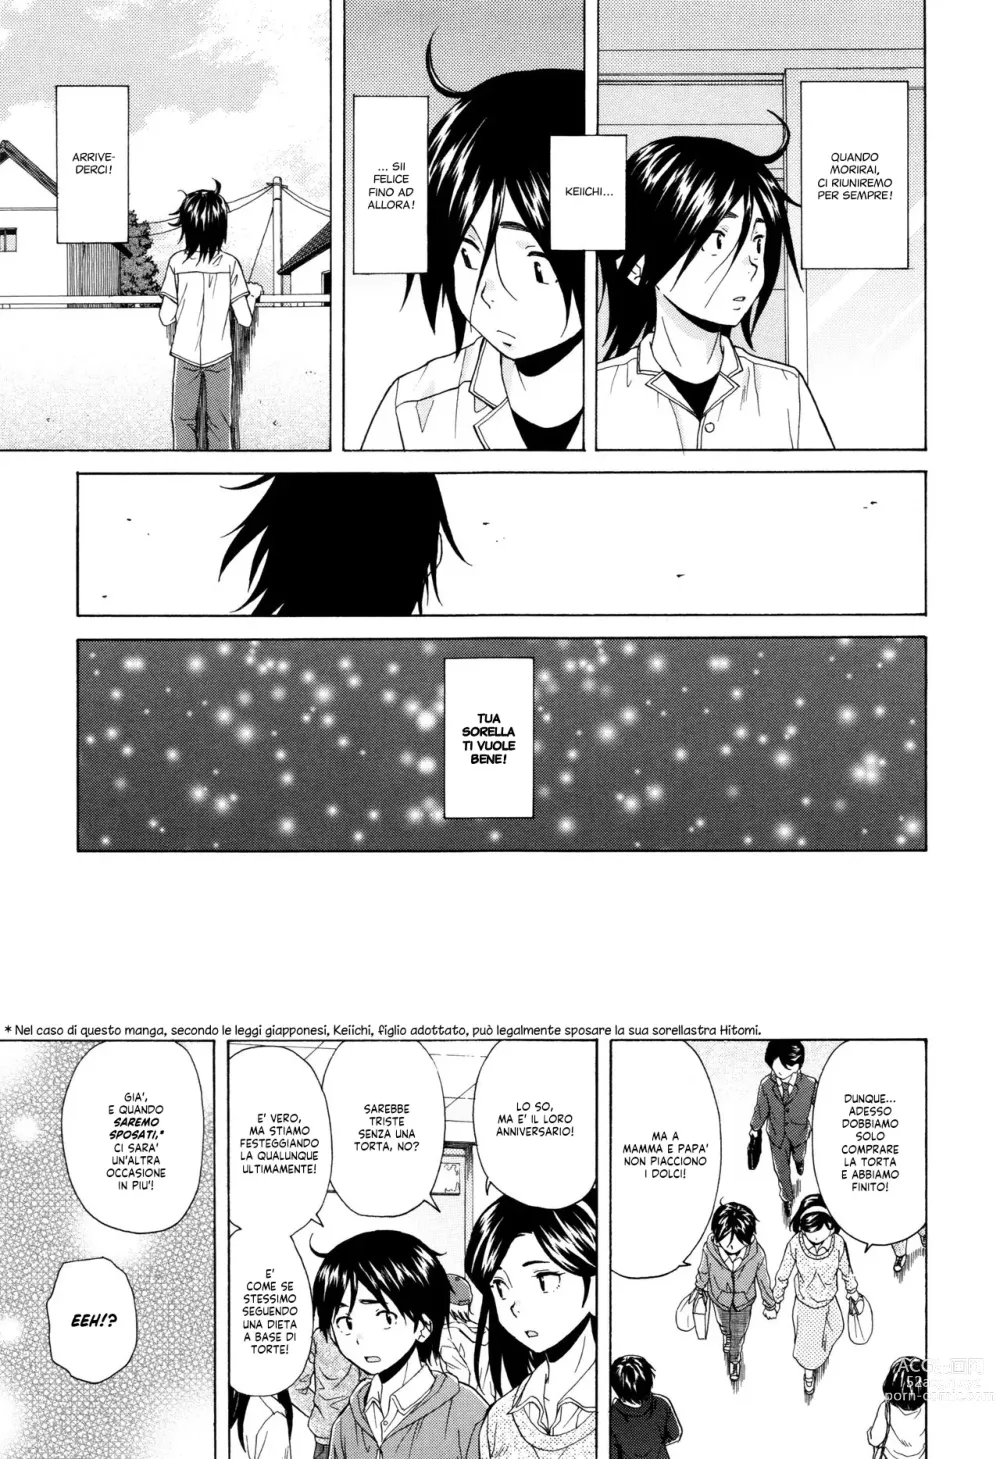 Page 207 of manga Segreti, Suicidi e Sorelle (decensored)